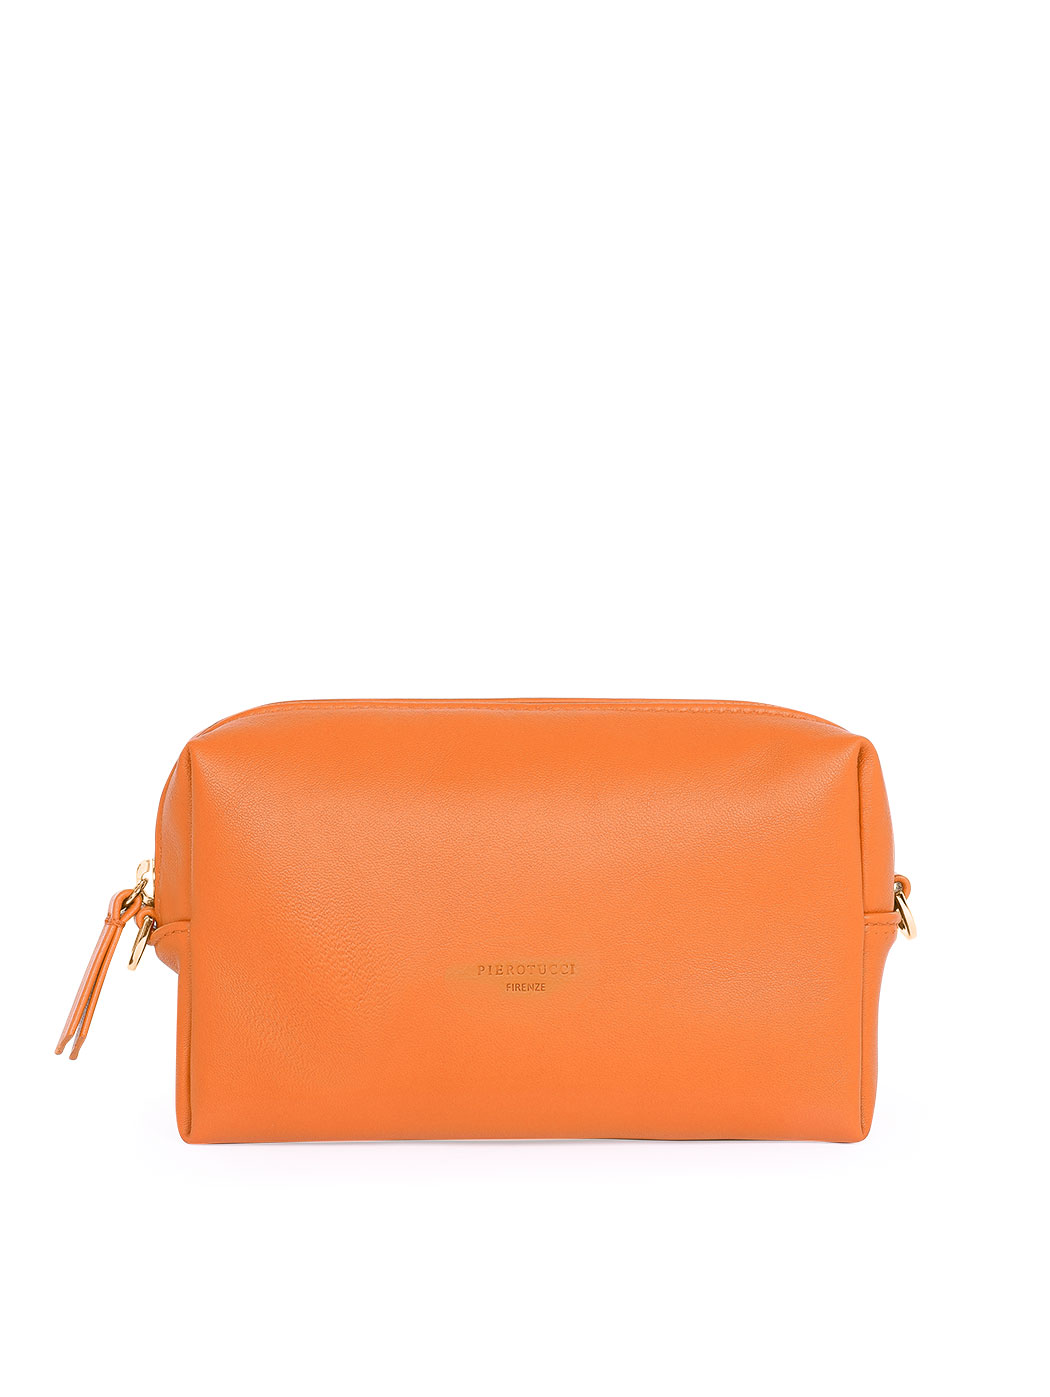 Прямоугольная сумочка с регулируемым ремнем оранжевого цвета